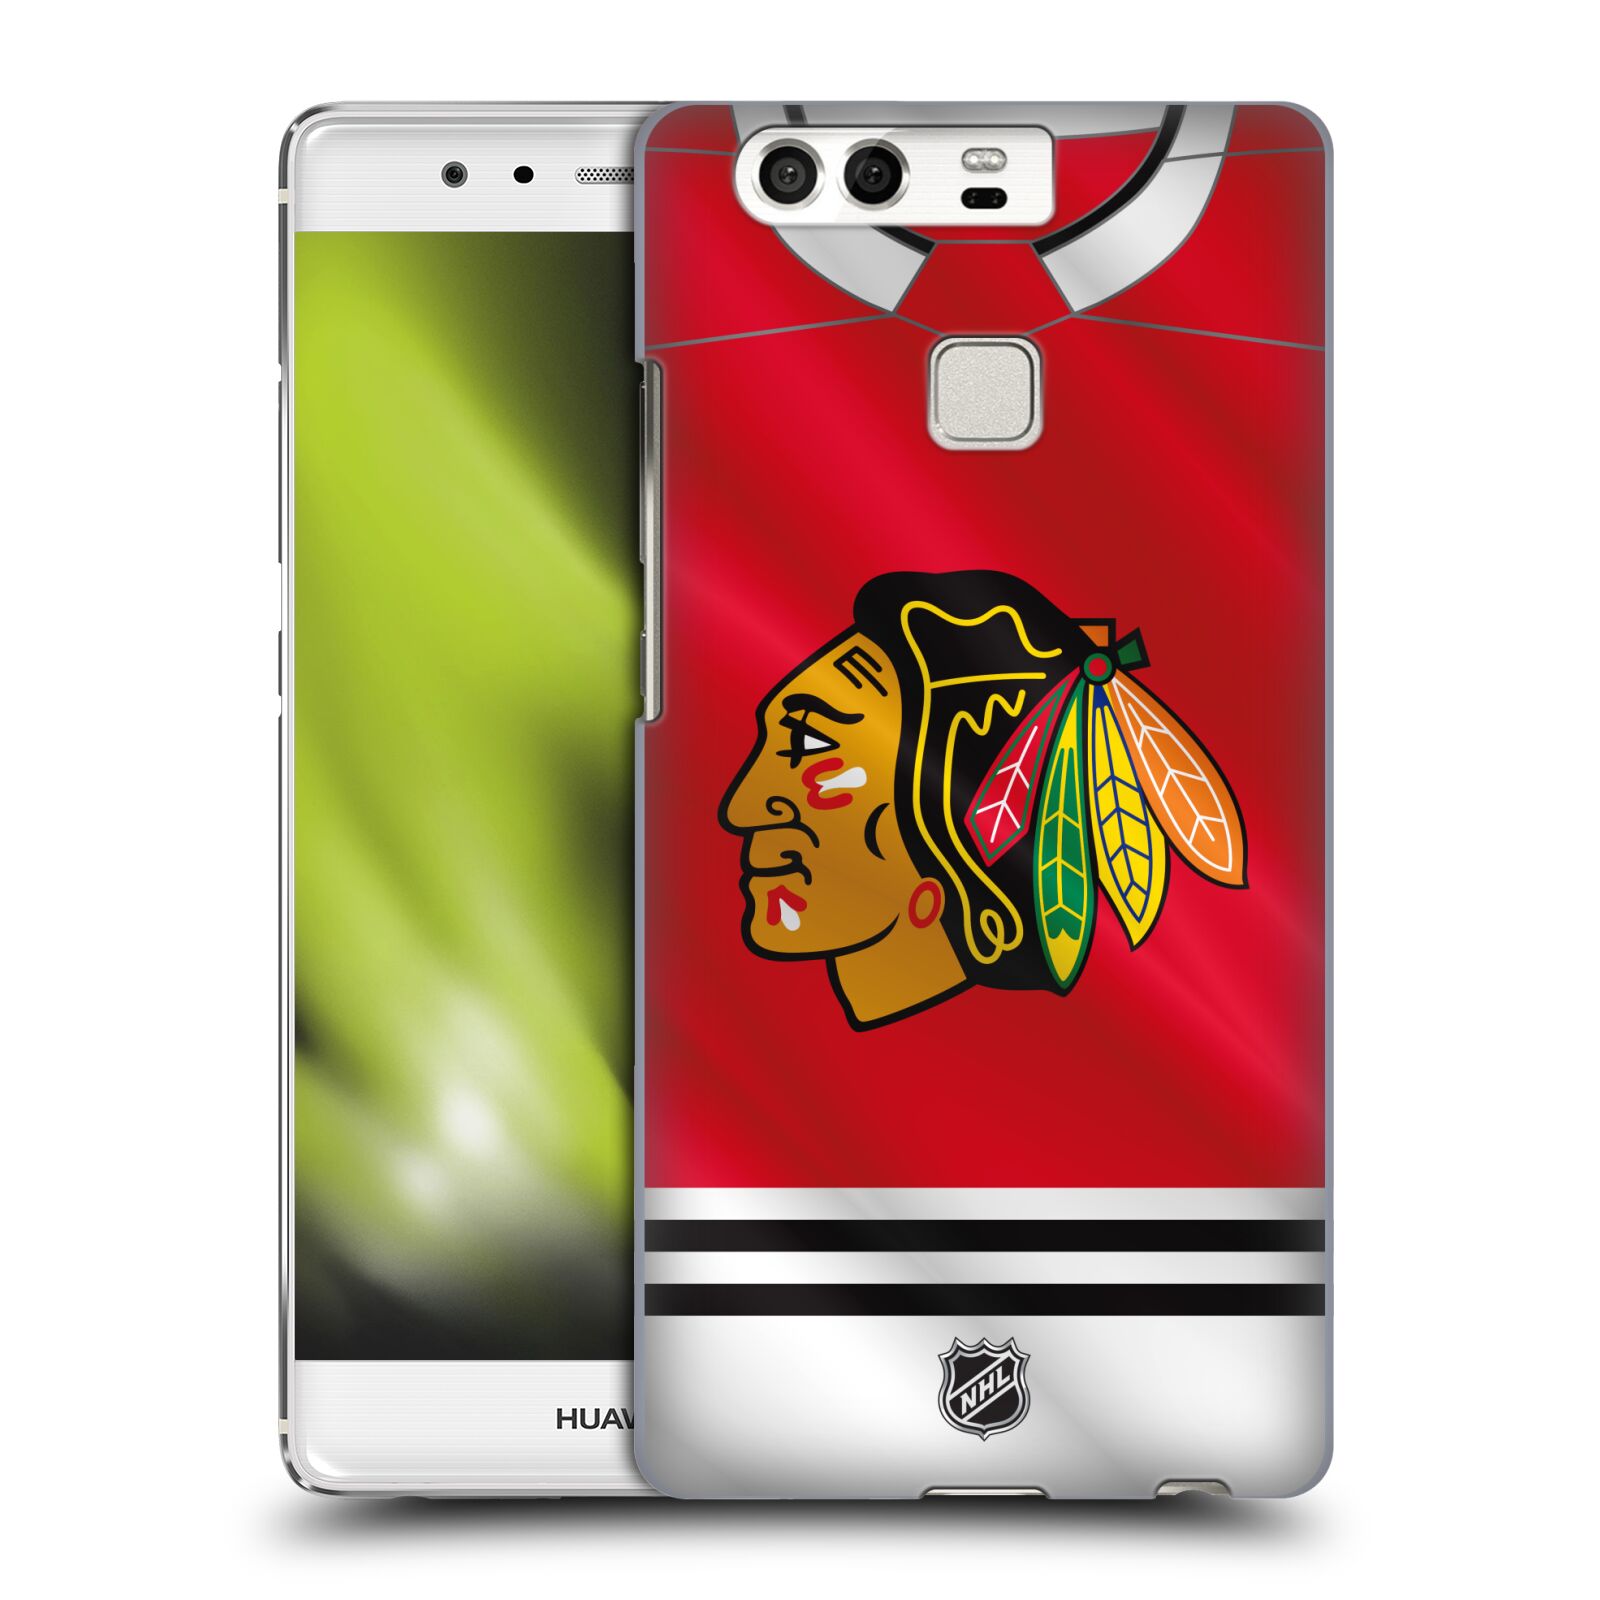 Pouzdro na mobil Huawei P9 / P9 DUAL SIM - HEAD CASE - Hokej NHL - Chicago Blackhawks - dres